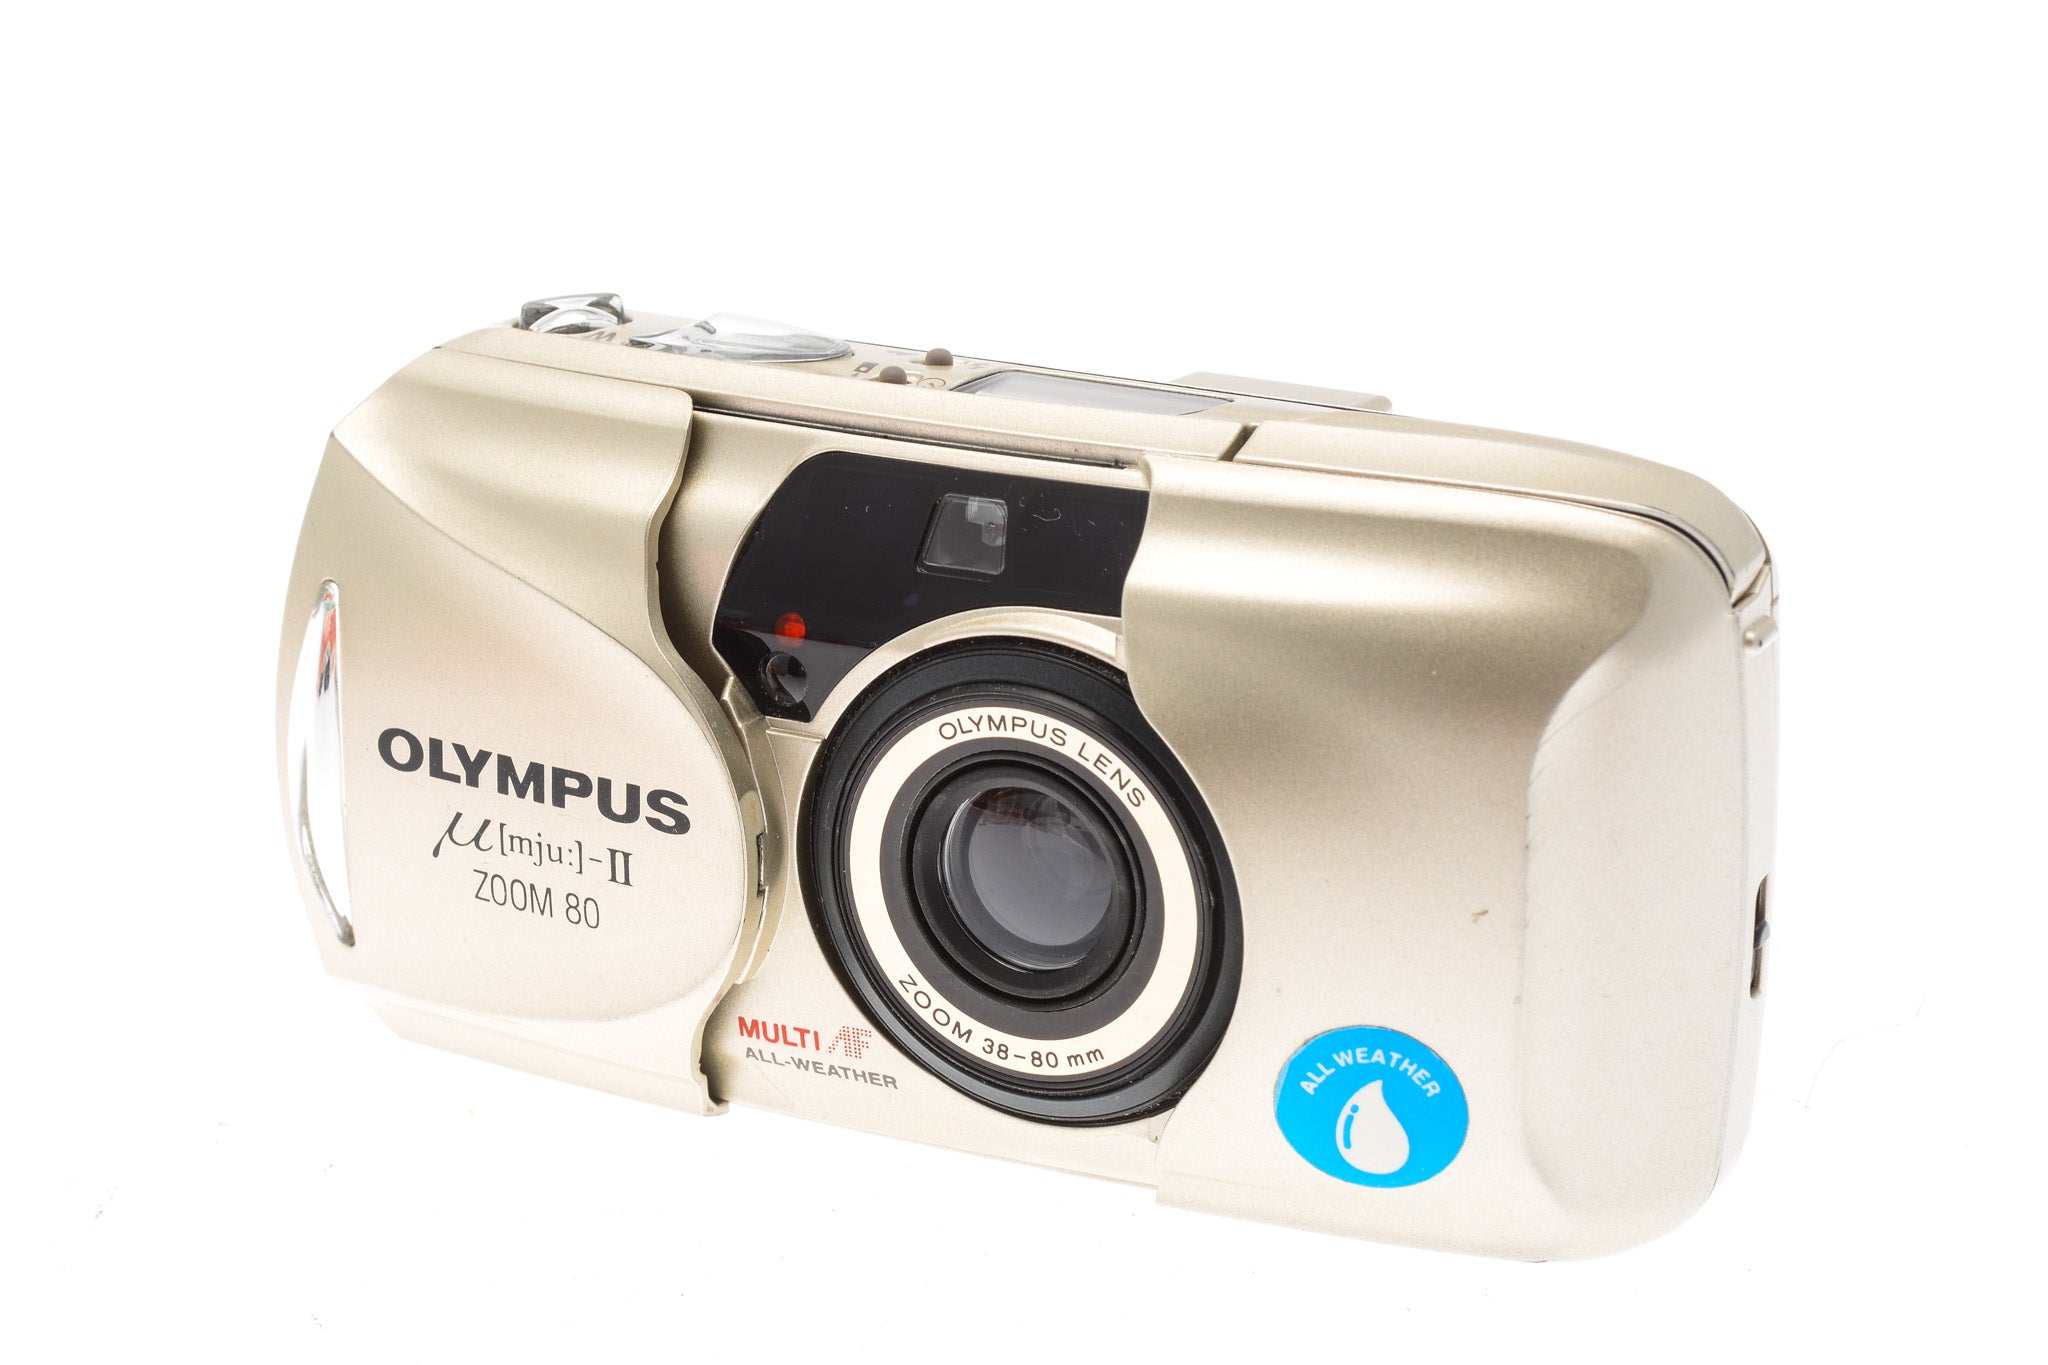 Buitenland strategie karbonade Olympus mju-II Zoom 80 Panorama - Camera – Kamerastore